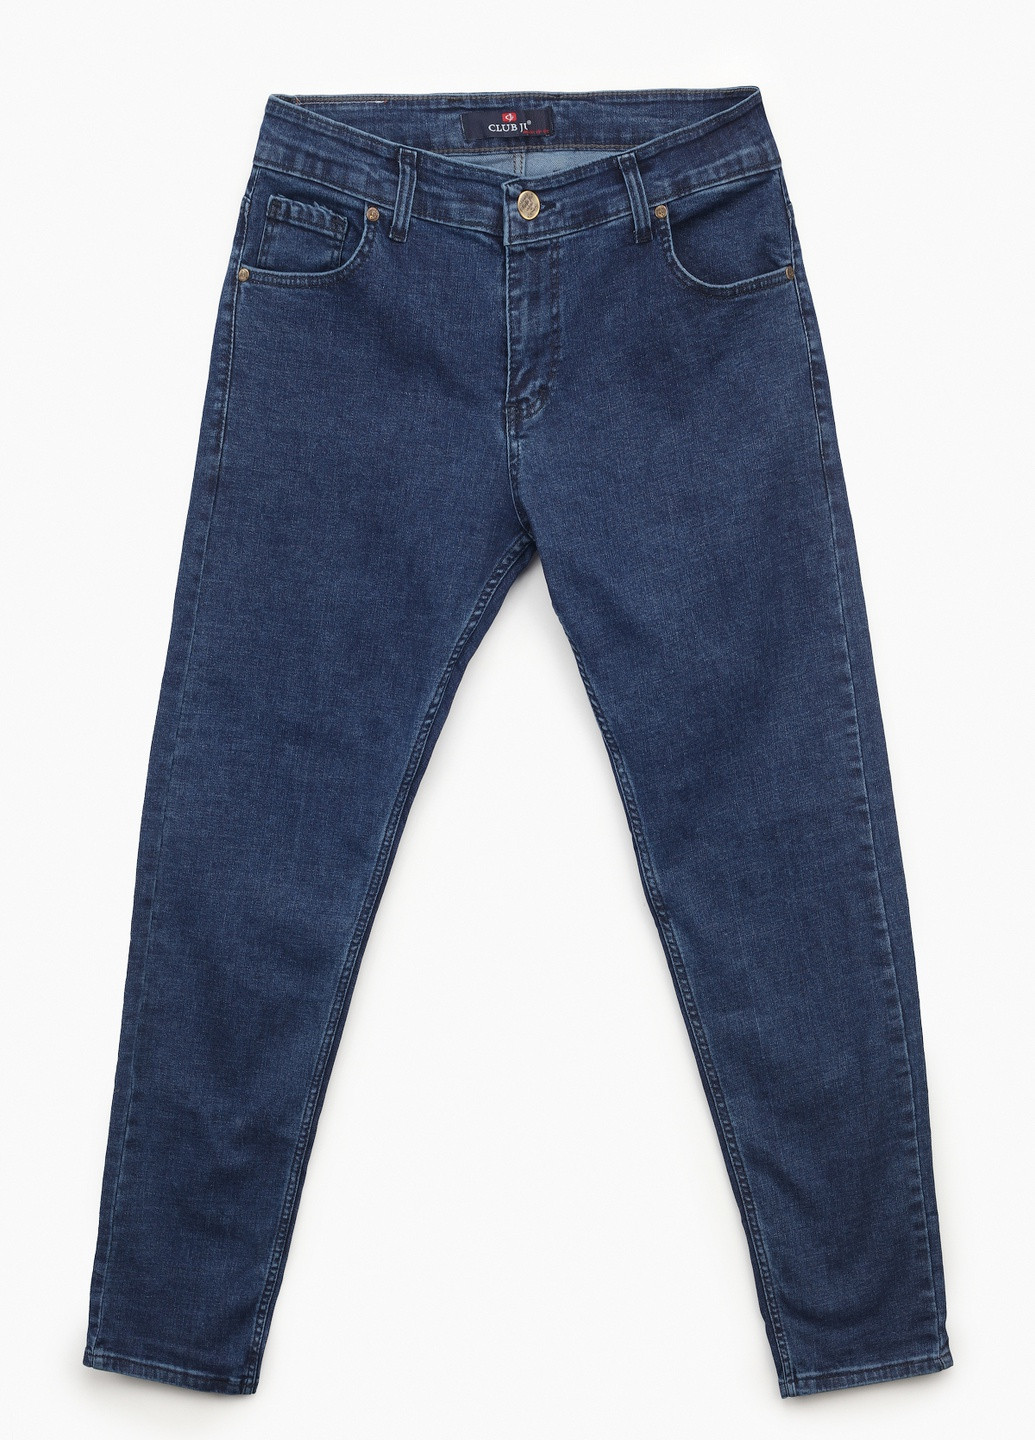 Синие демисезонные джинсы CLUB JU